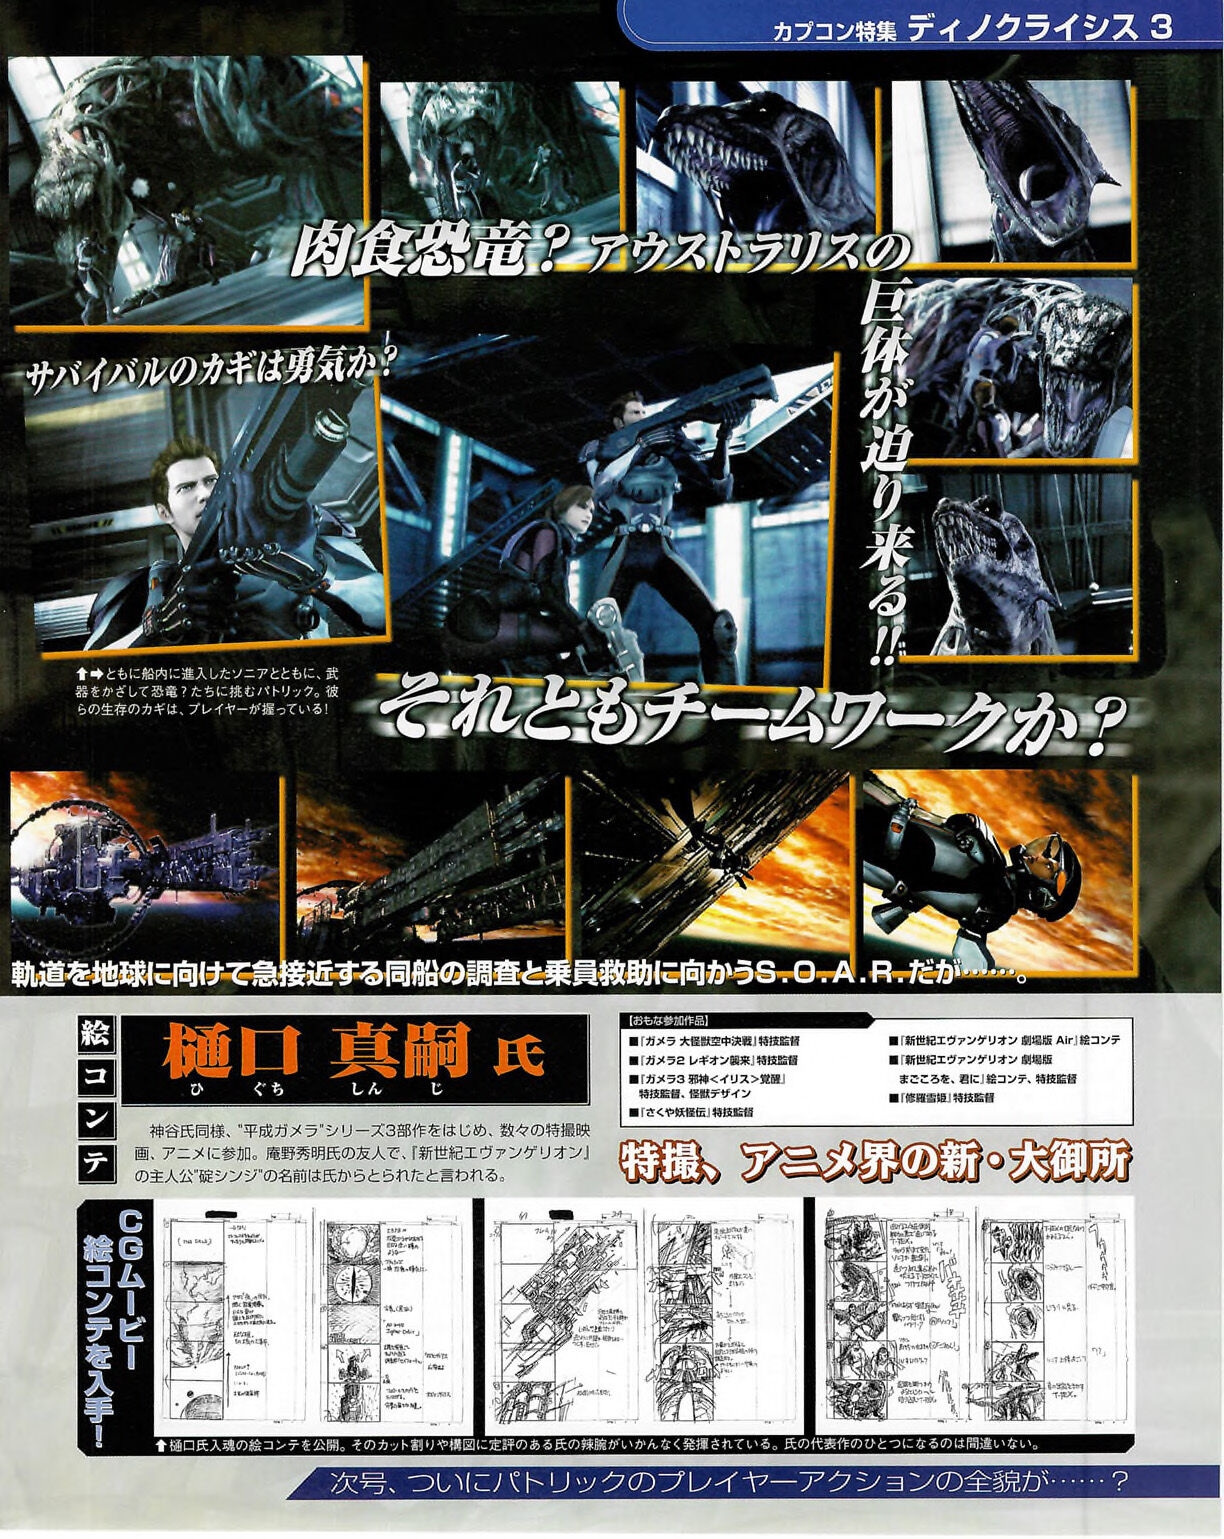 Famitsu_Xbox_2003-04_jp2 54